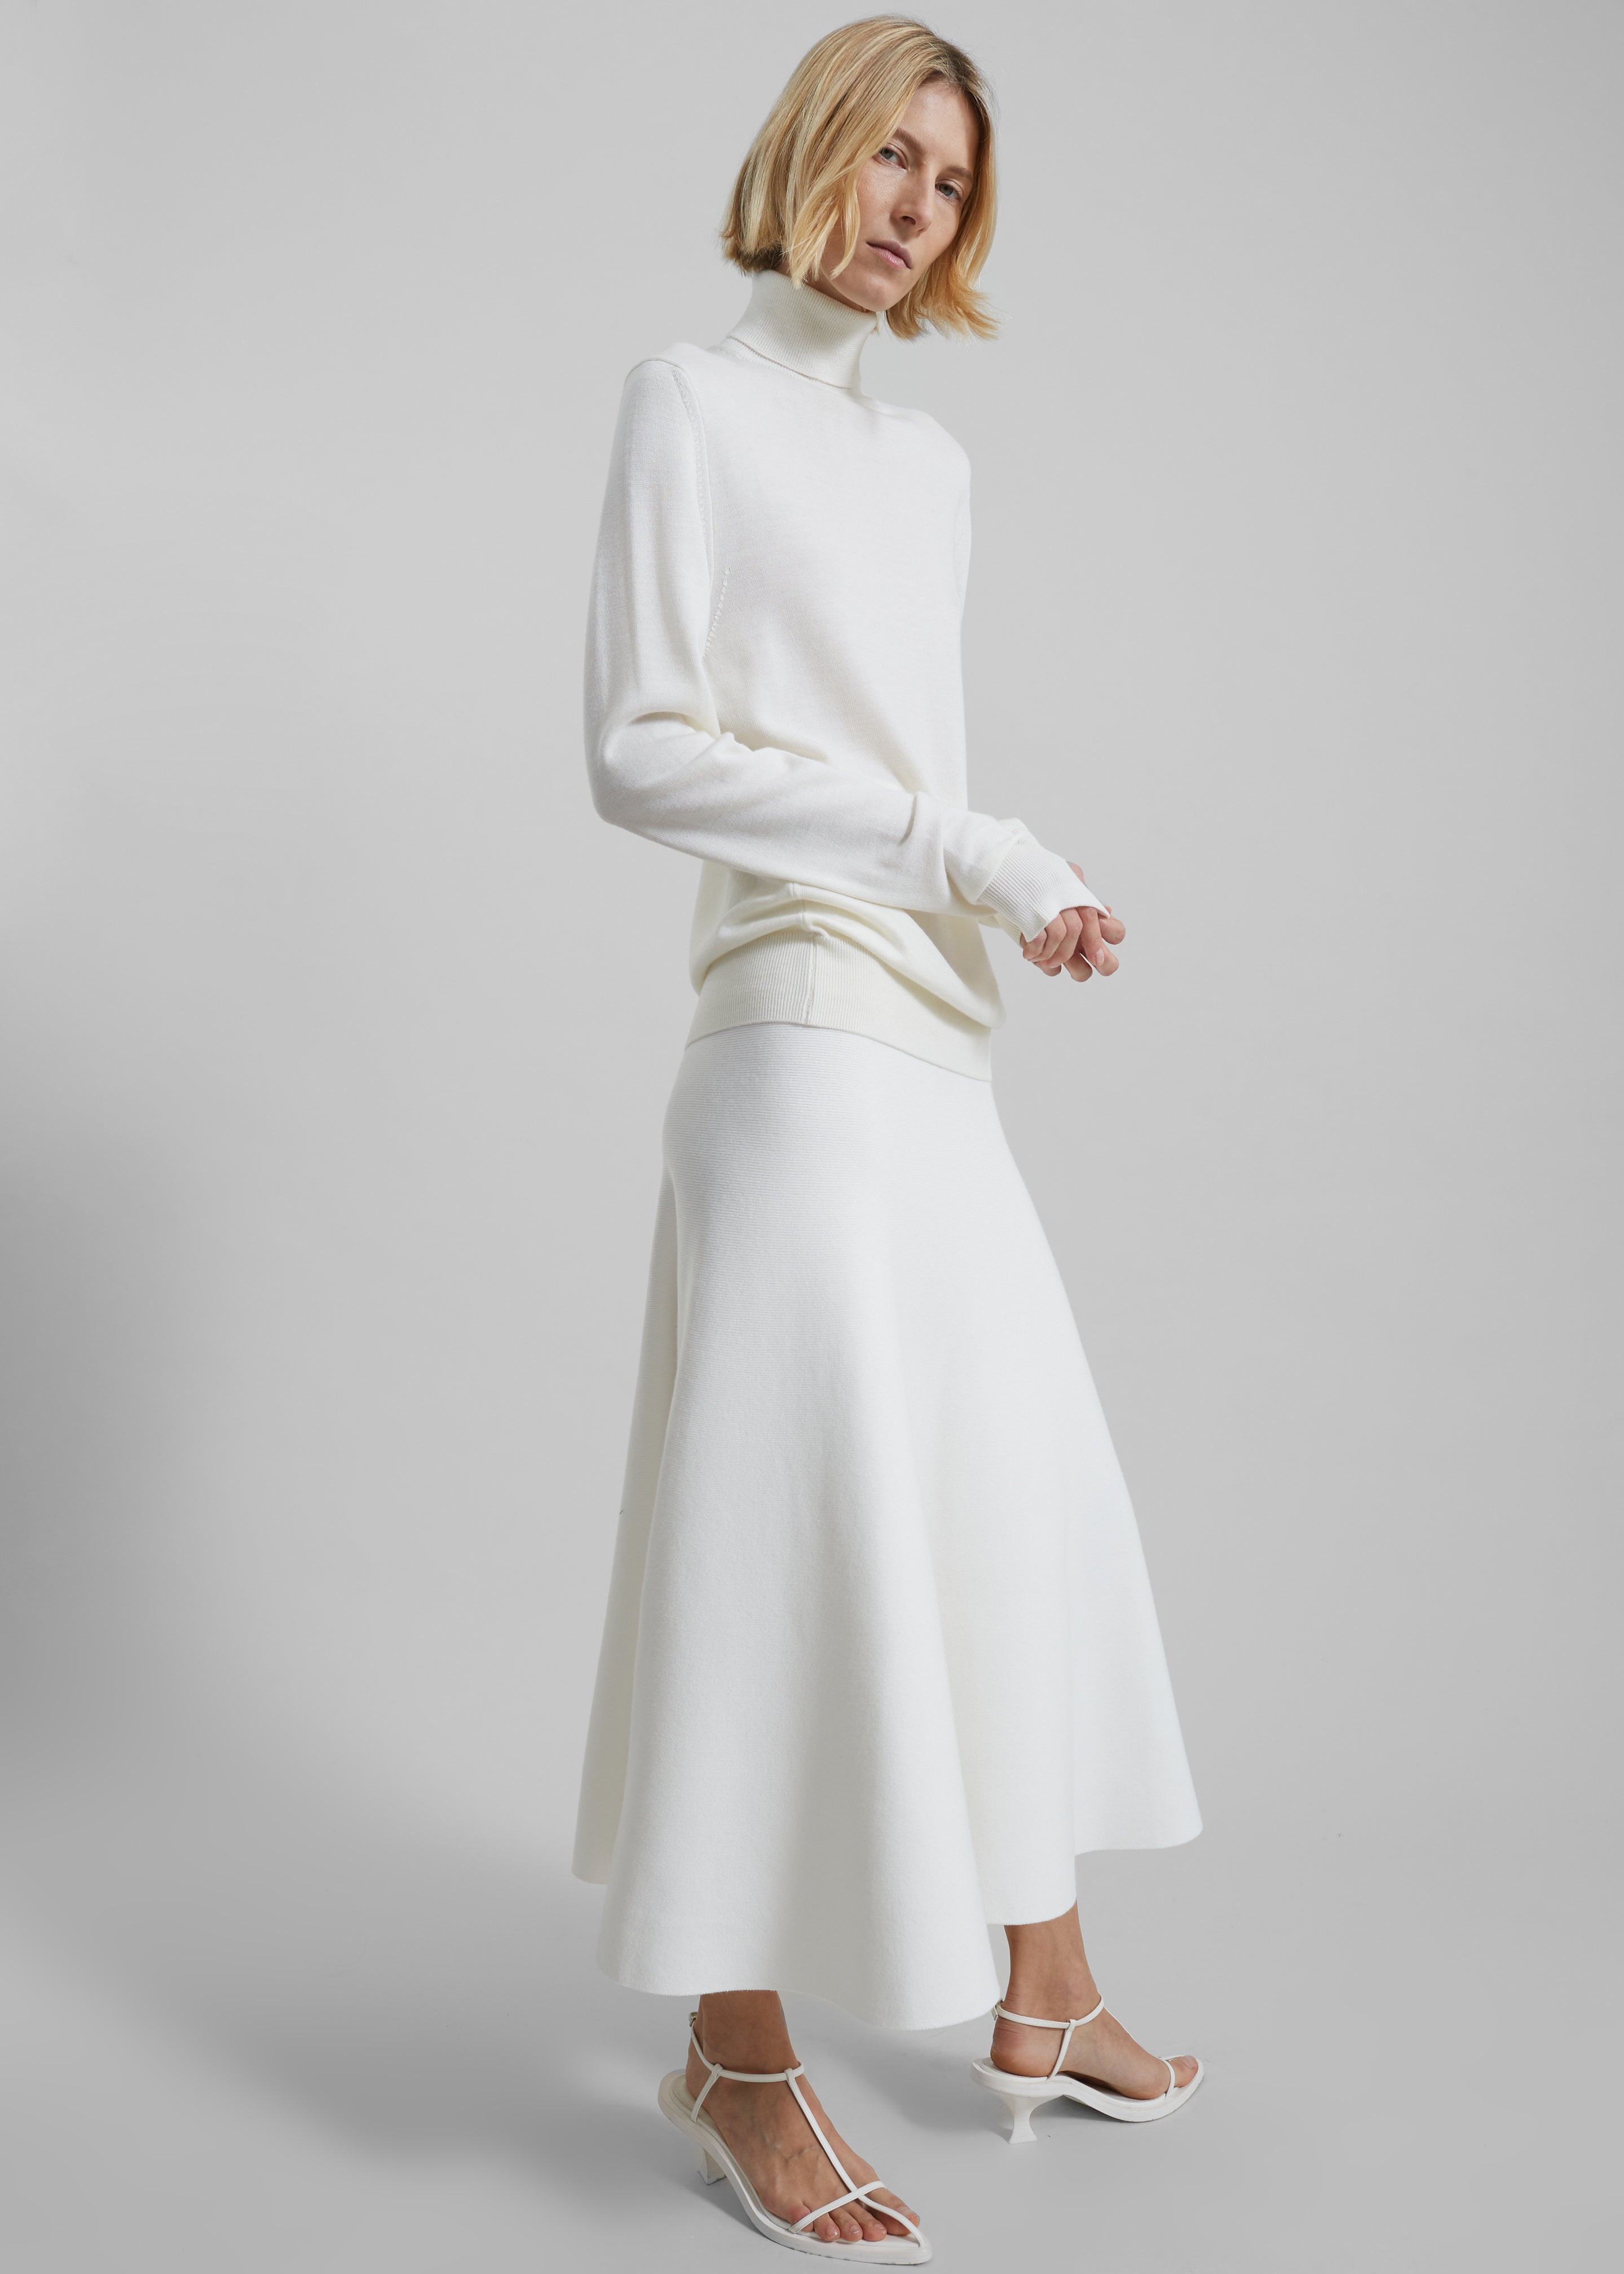 WARDROBE.NYC Off-White Wrap Midi Skirt